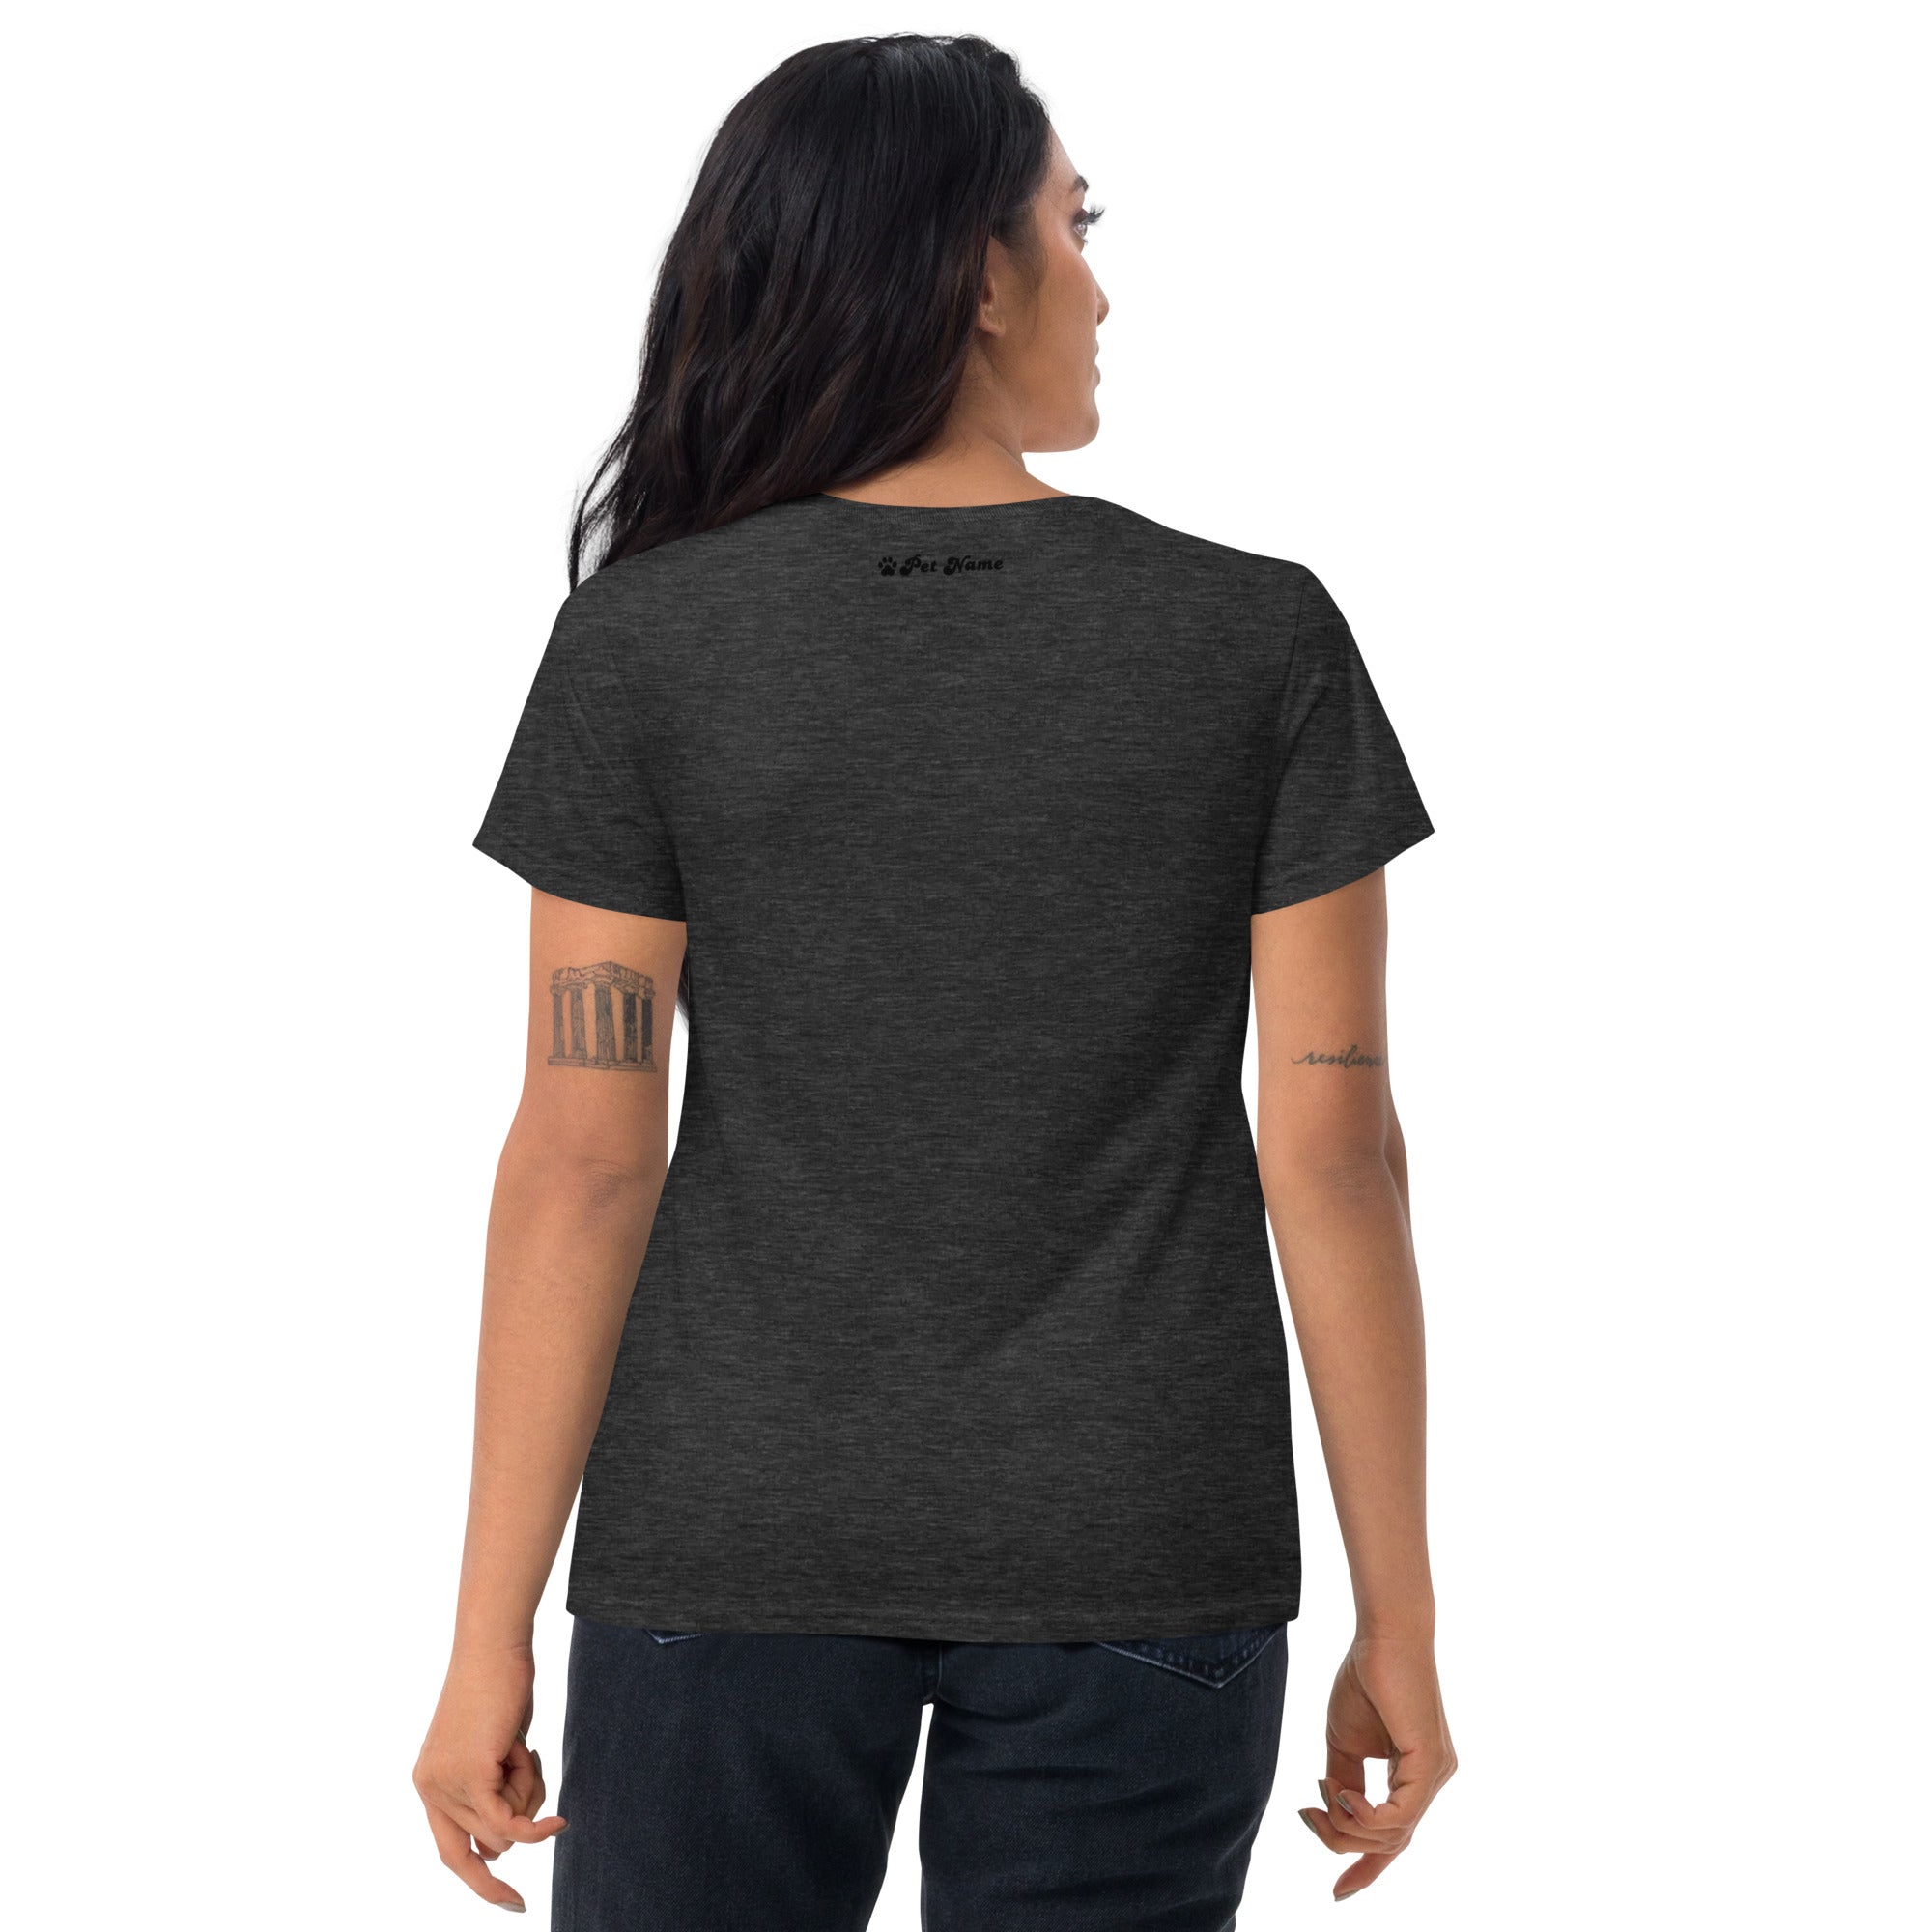 Fox Terrier-Smooth Women's short sleeve t-shirt